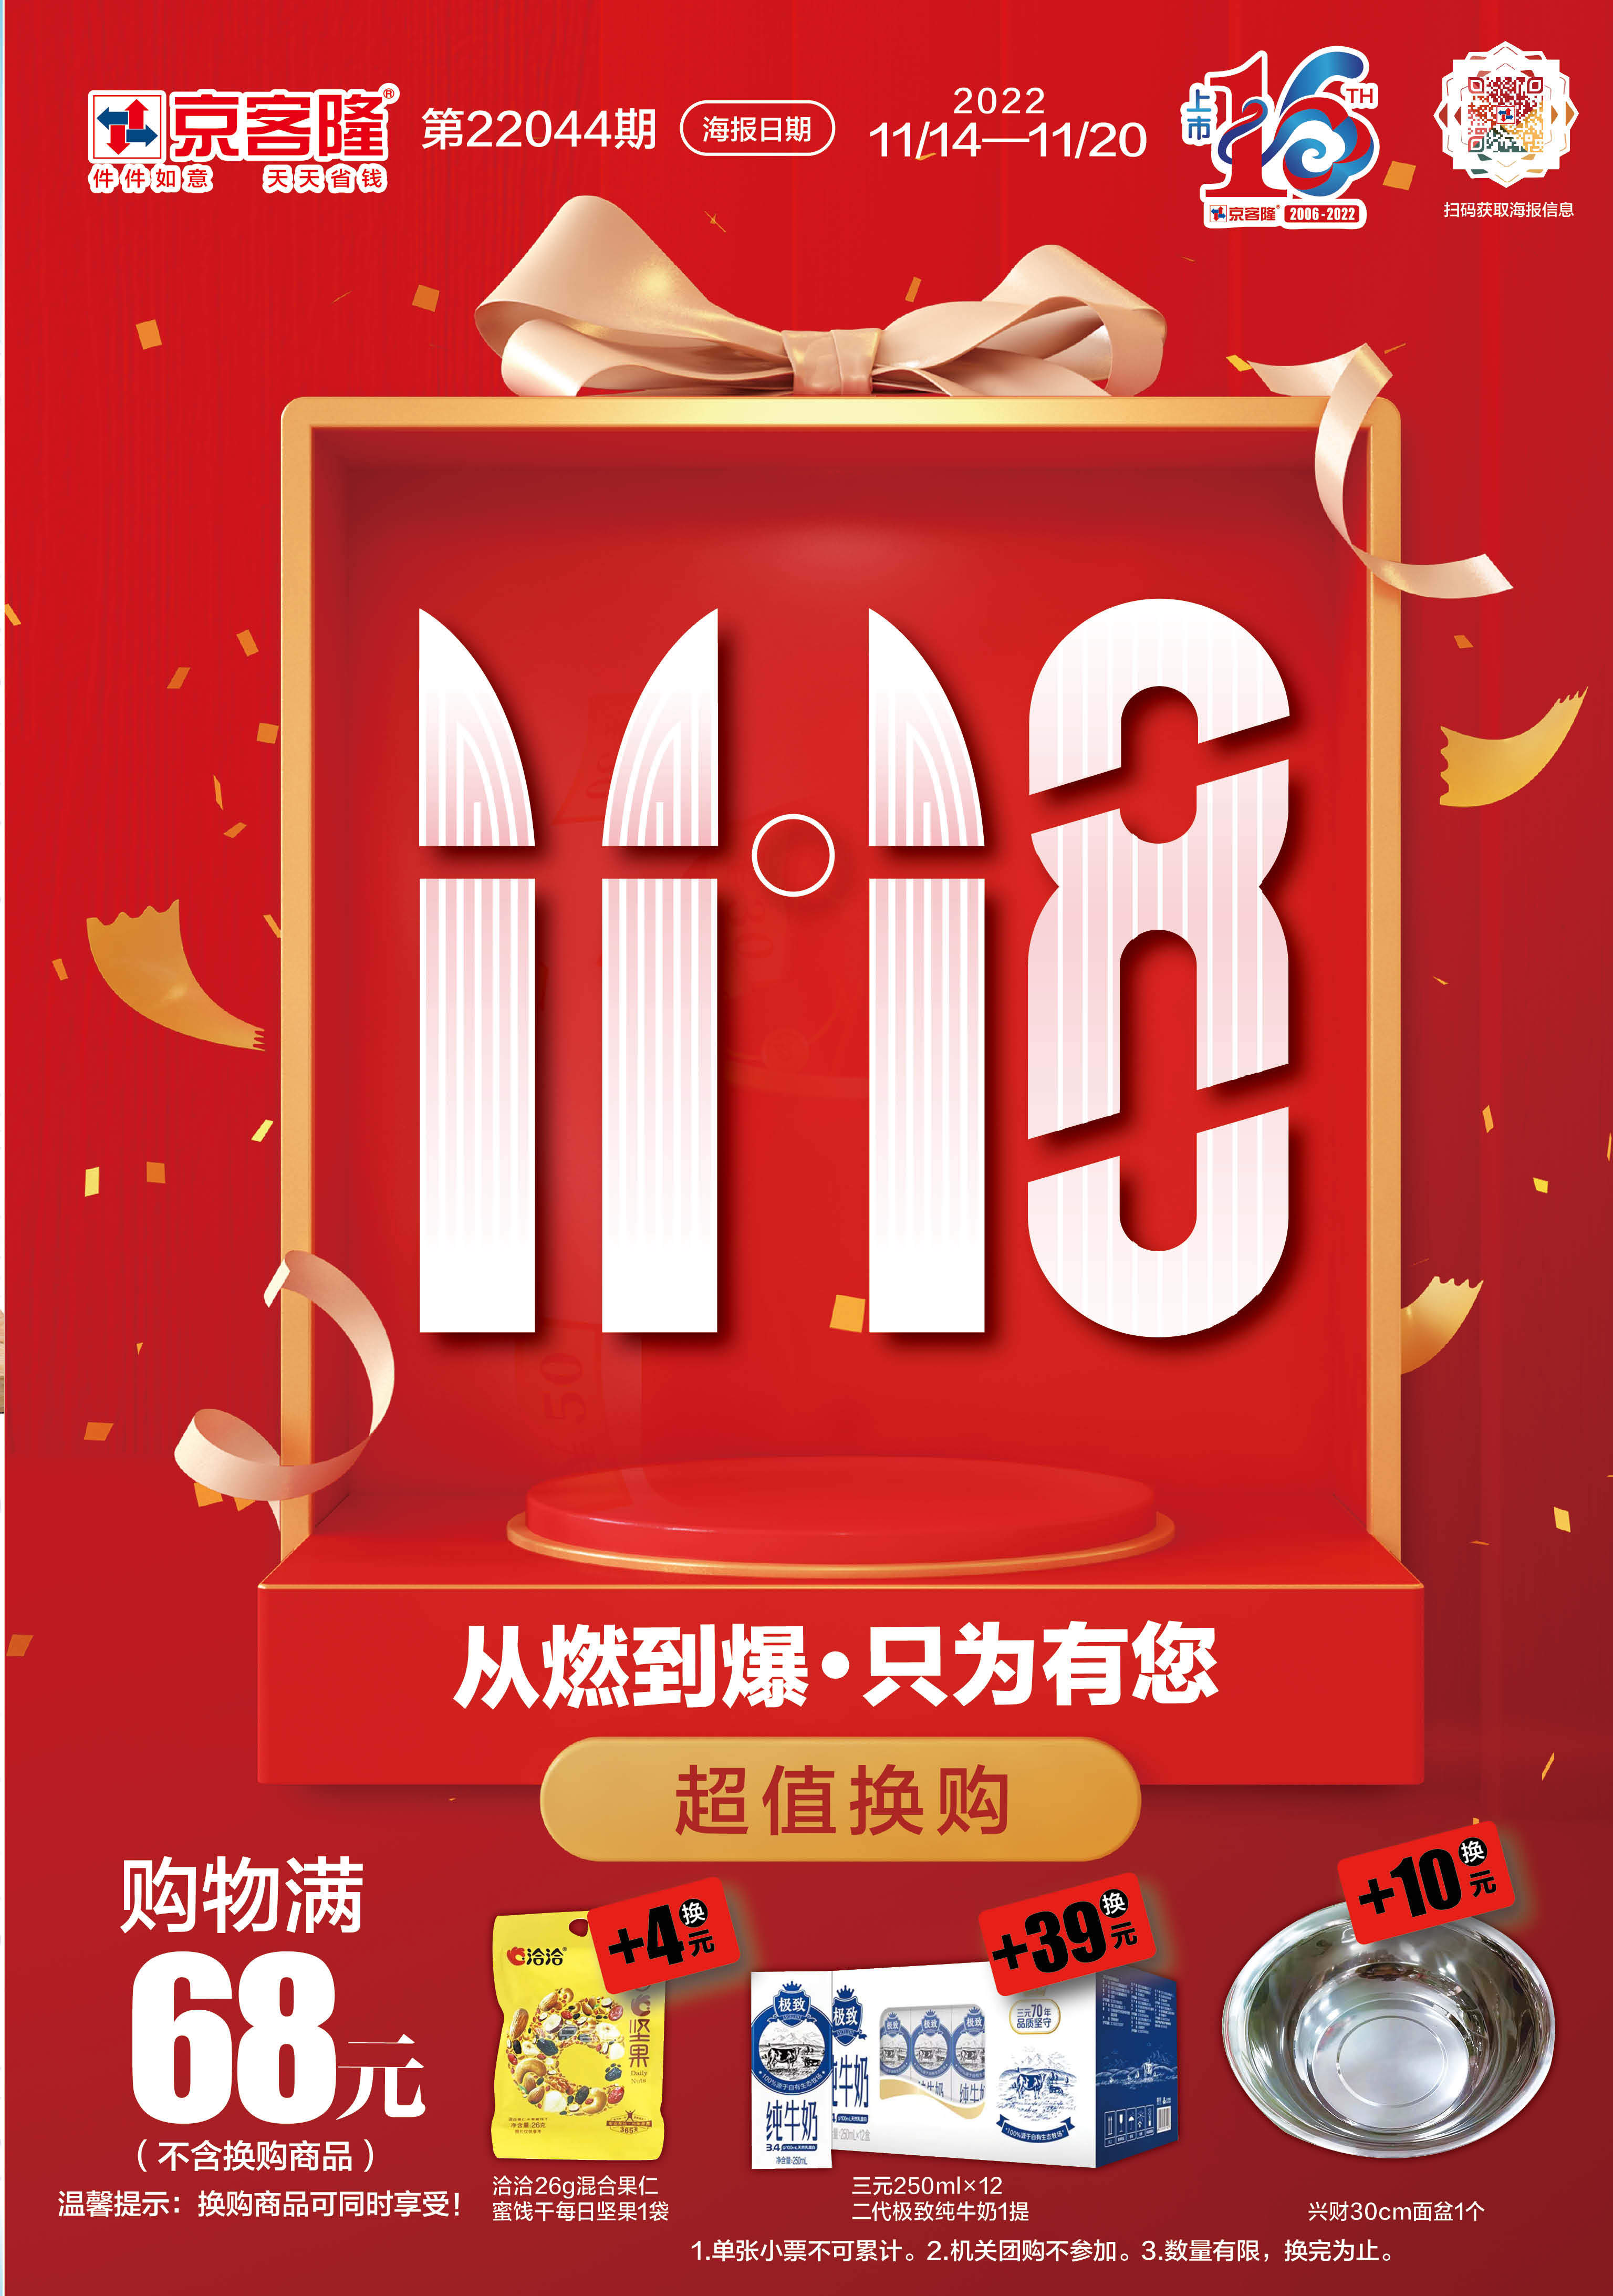 北京京客隆超市促销海报（第22044期）